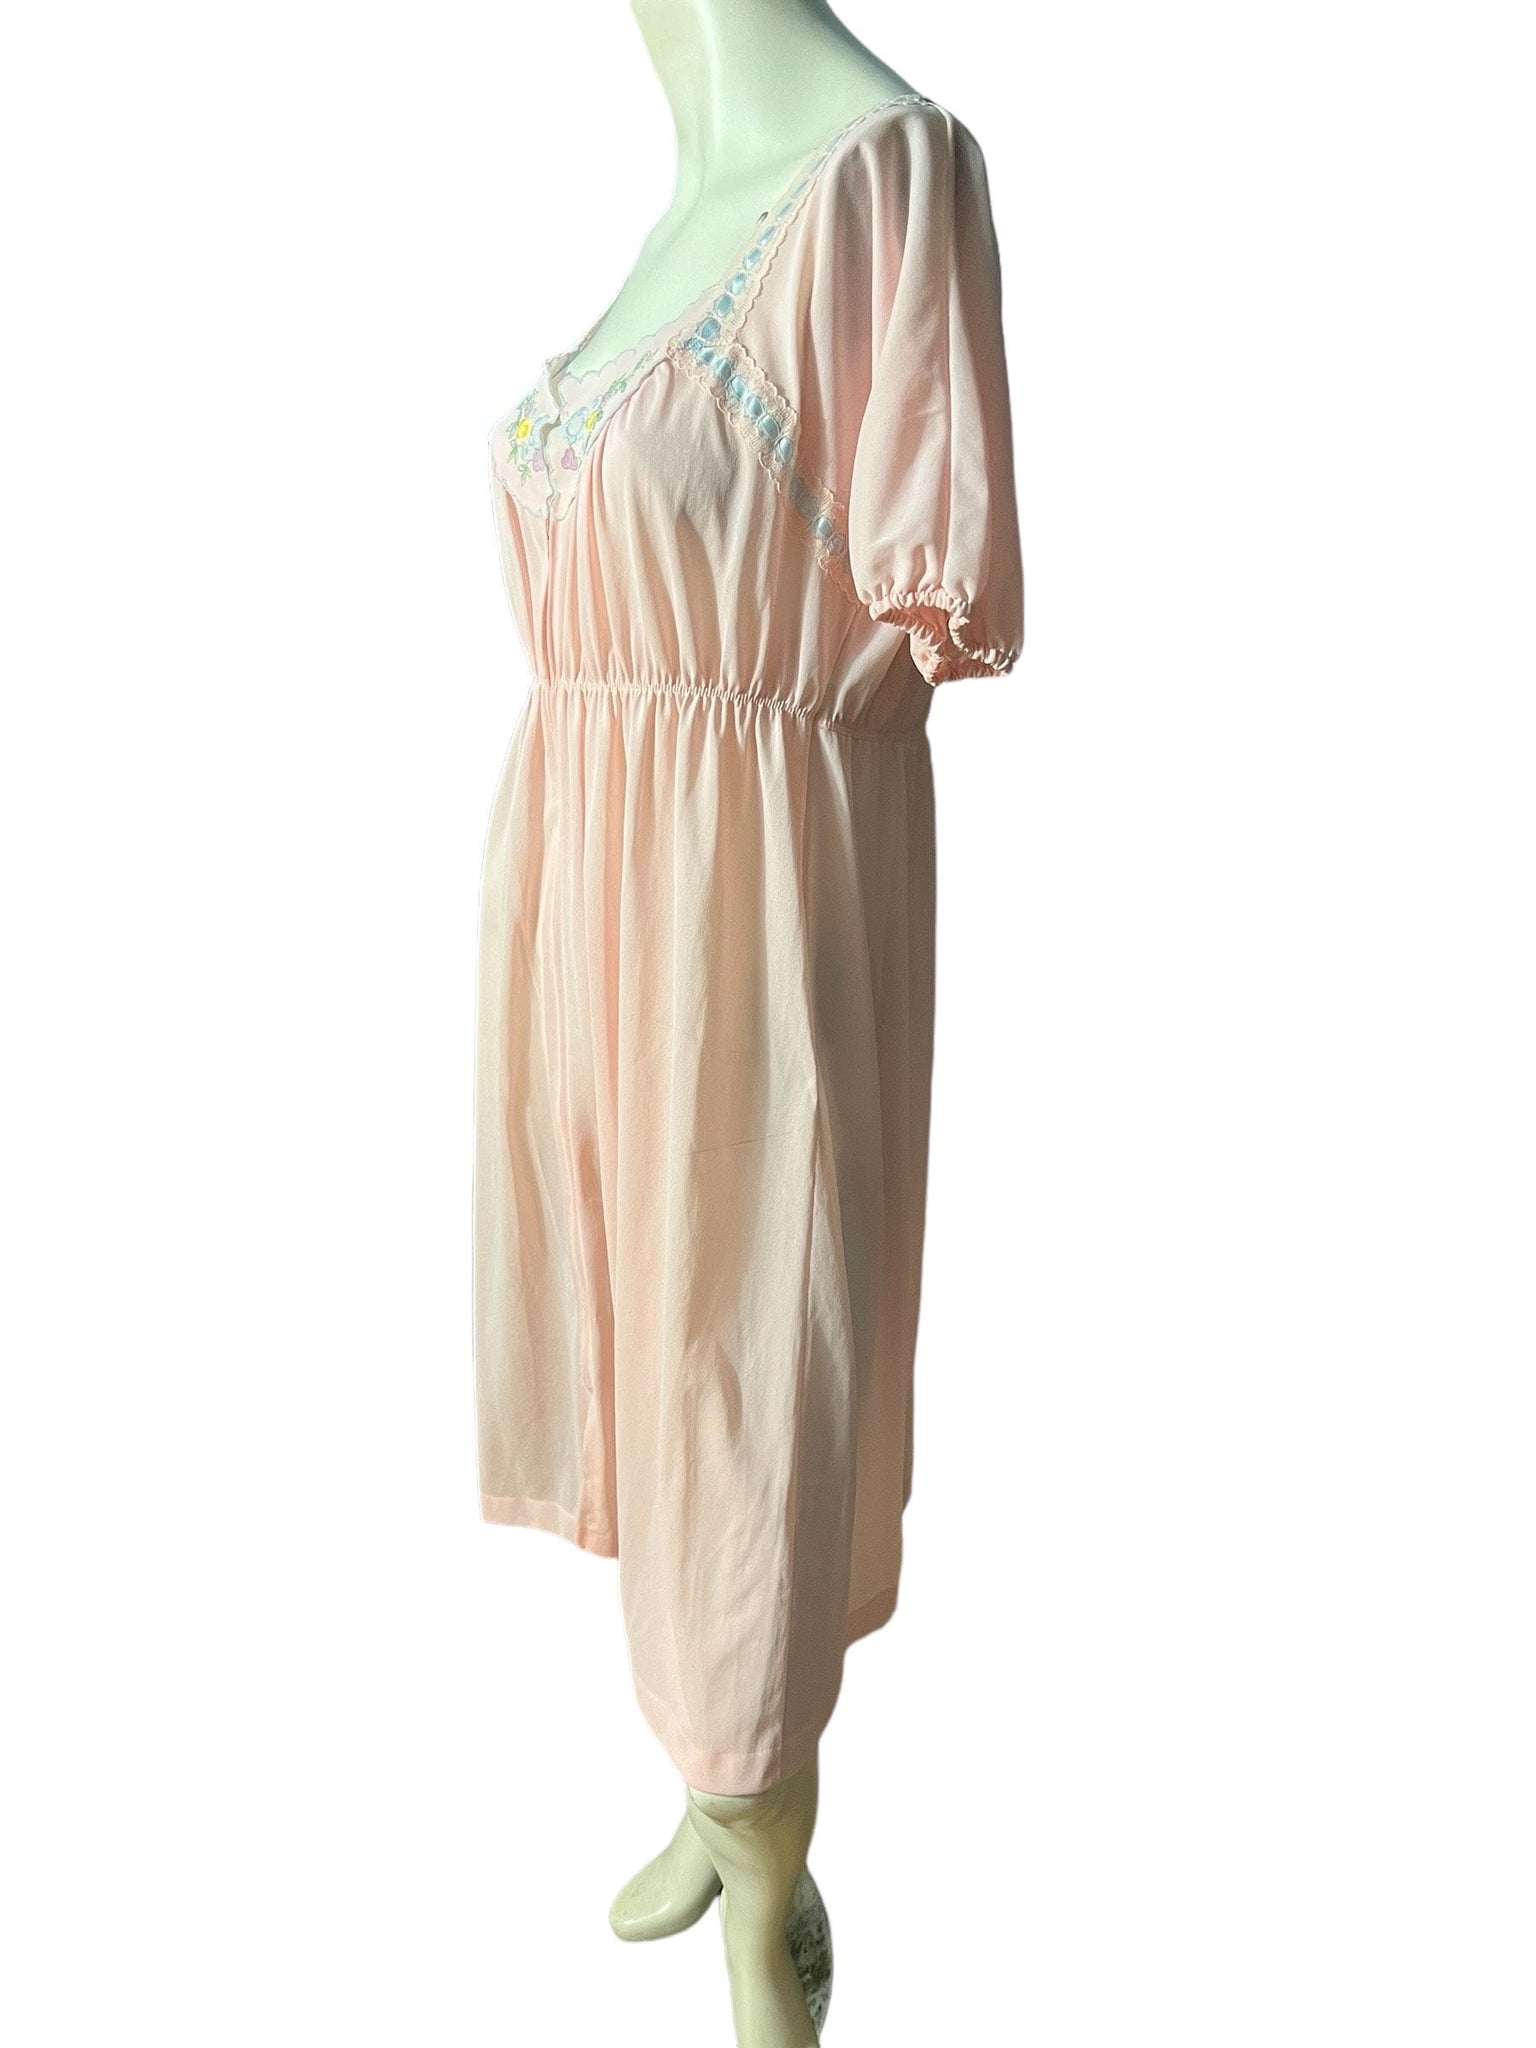 Vintage 60's pink nightgown M Gossard Artemis